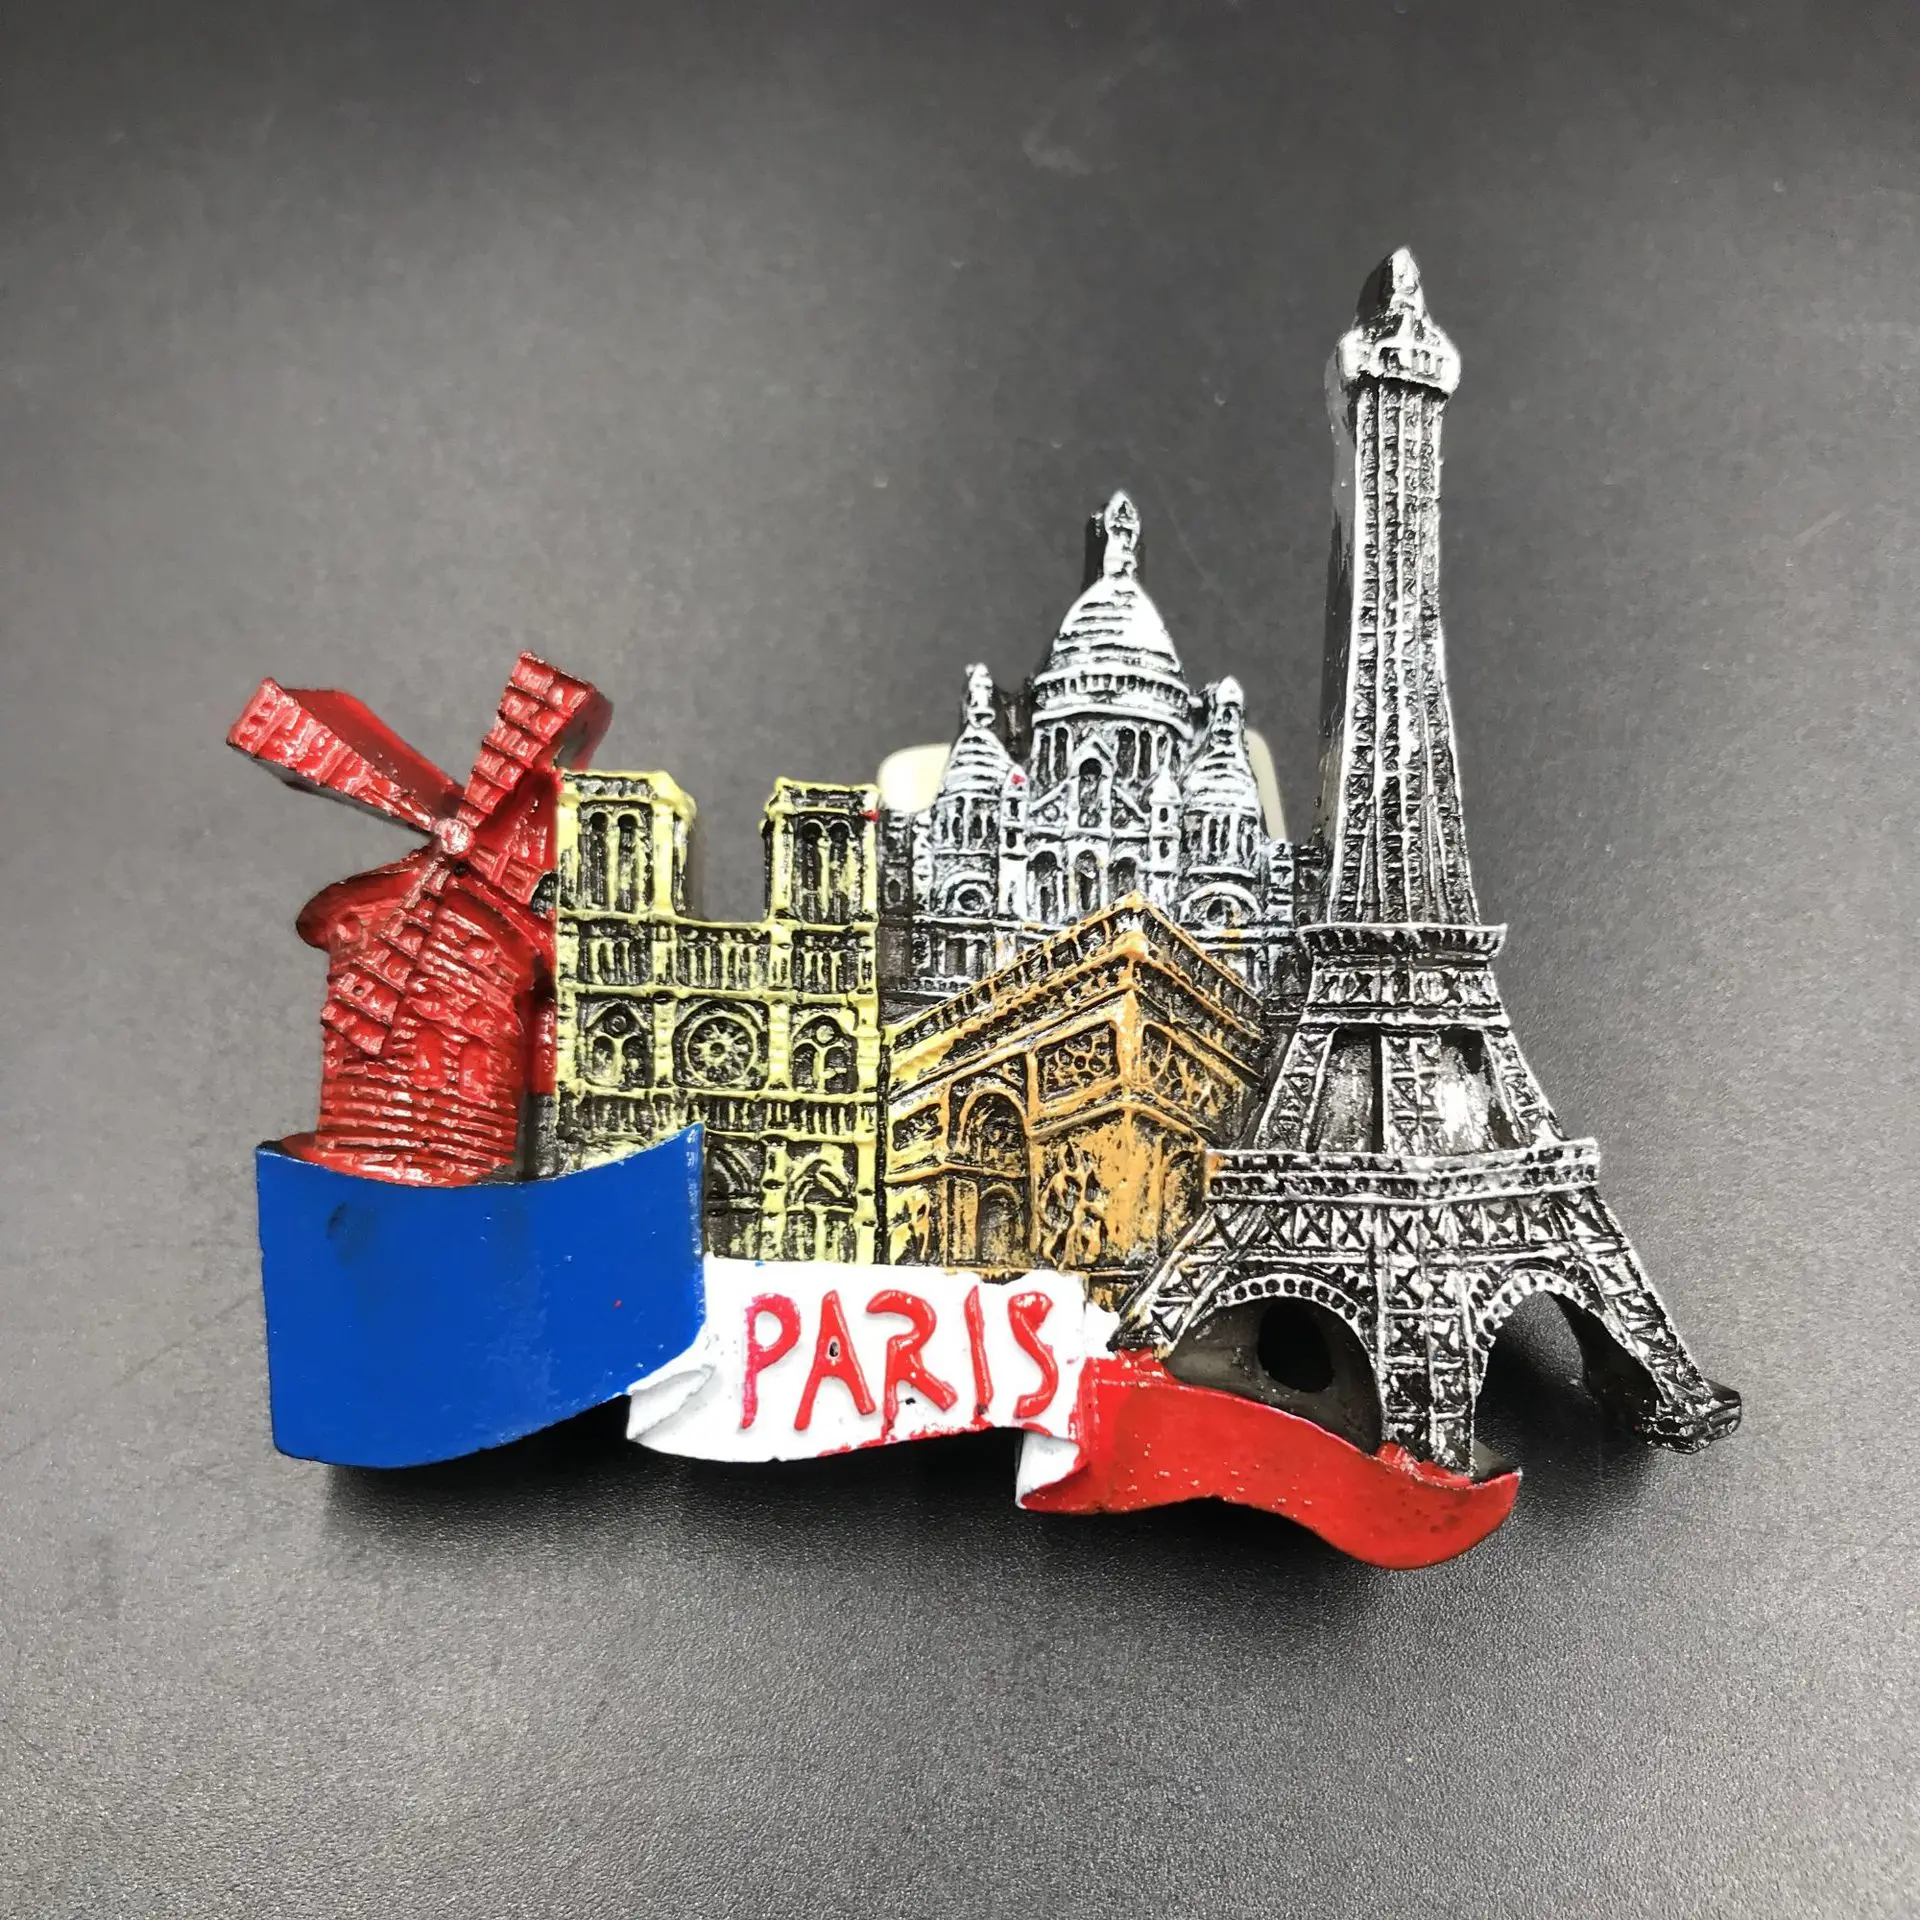 Франция Париж EiffelTower смолы холодильник наклейки 3D Сувенирный плоский магнит на холодильник магниты на холодильник наклейки для украшения дома - Цвет: A